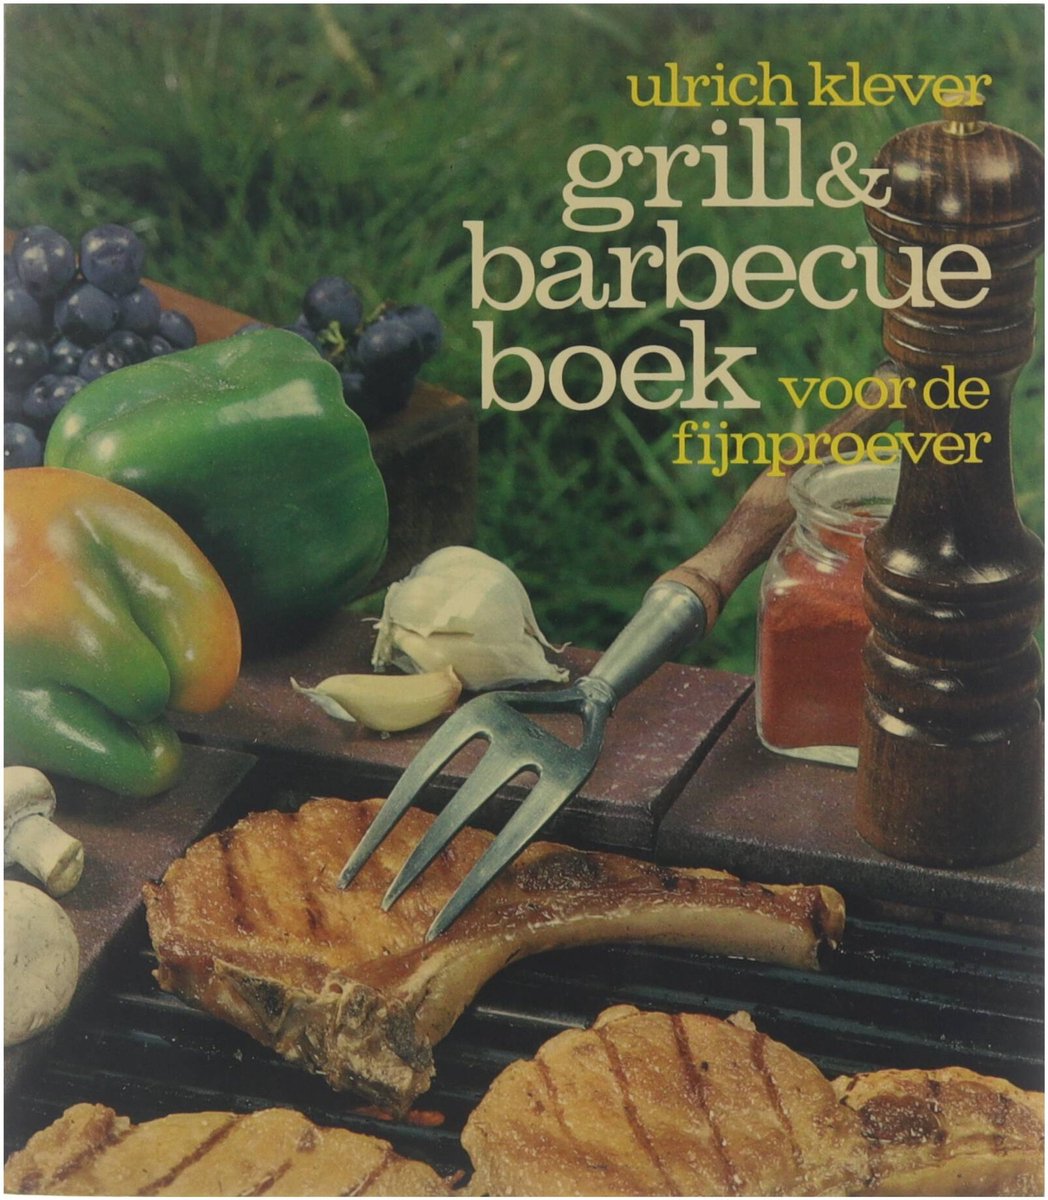 Grill & barbecueboek voor de fijnproever